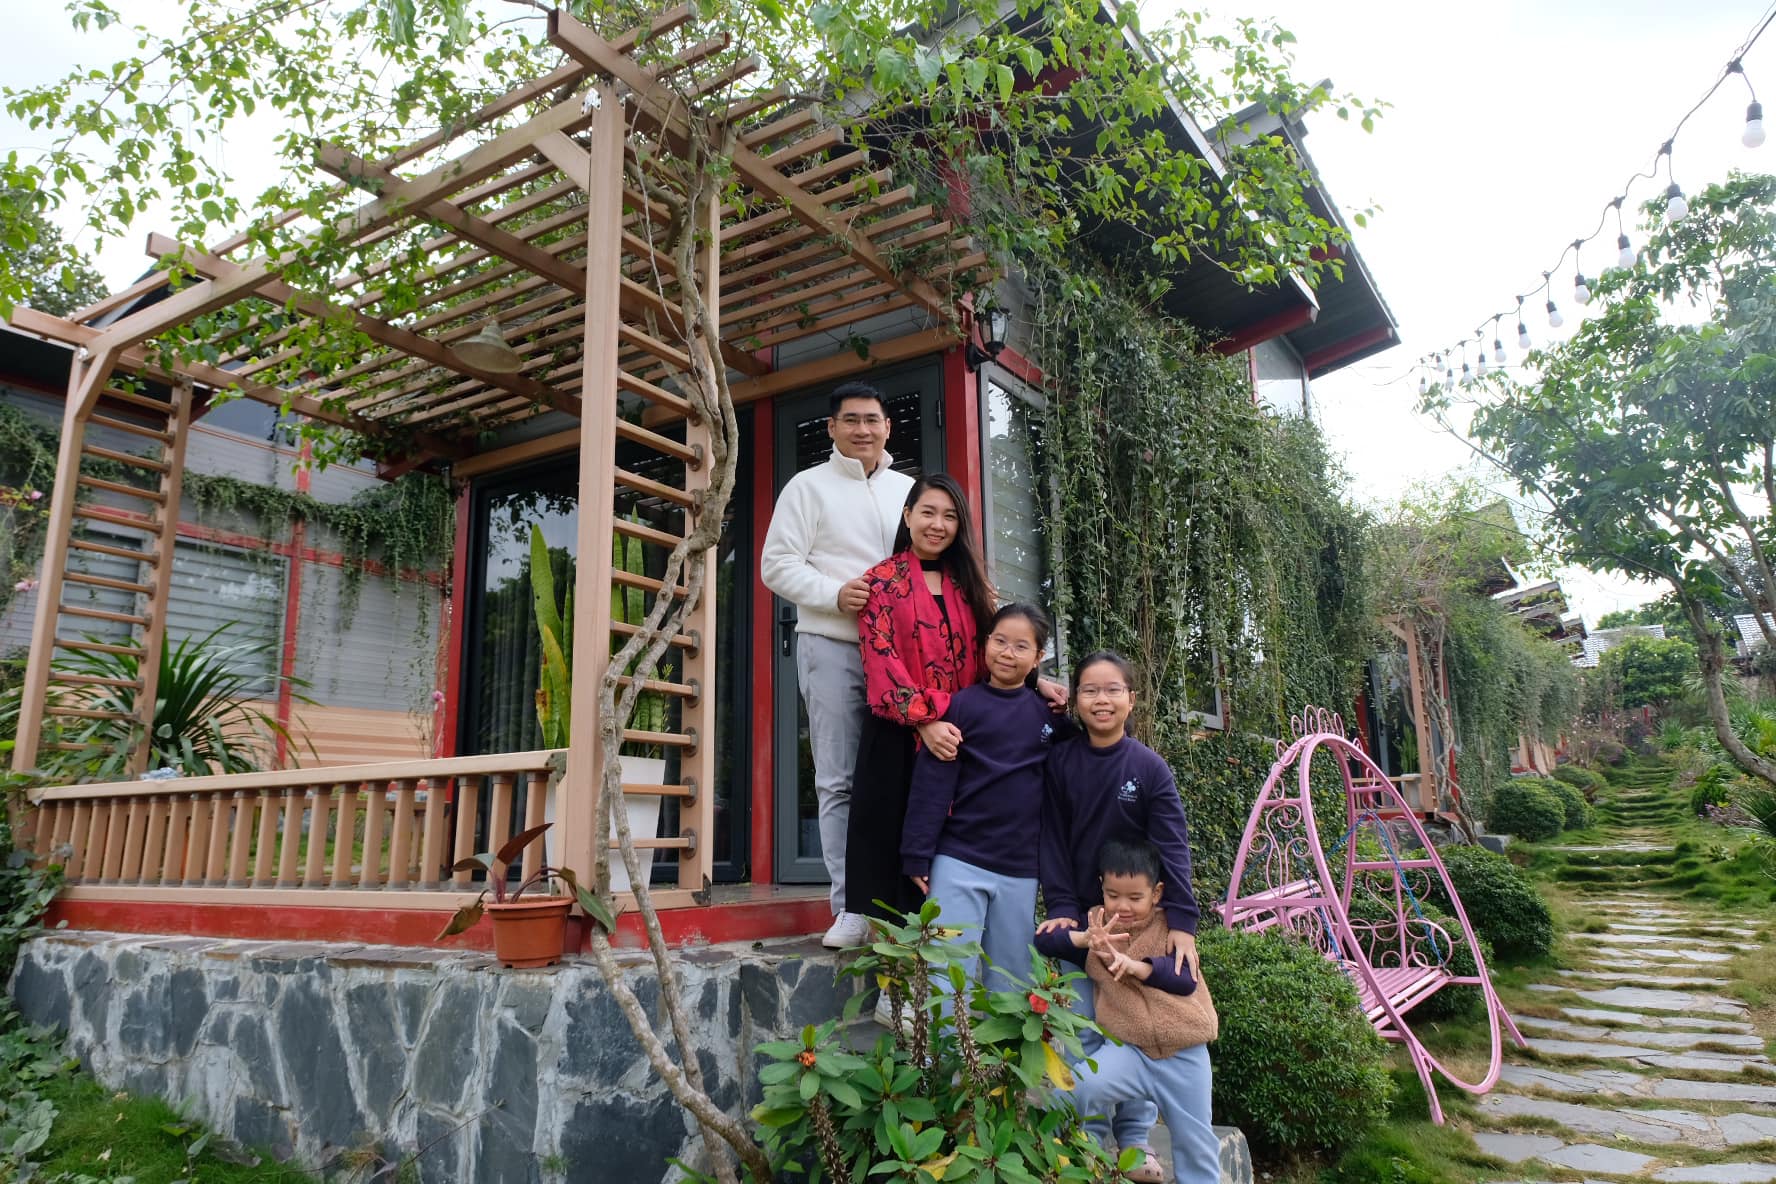 Gia đình mê du lịch mãn nhãn với sắc hoa tớ dày nhuộm hồng núi rừng Mộc Châu - Ảnh 3.